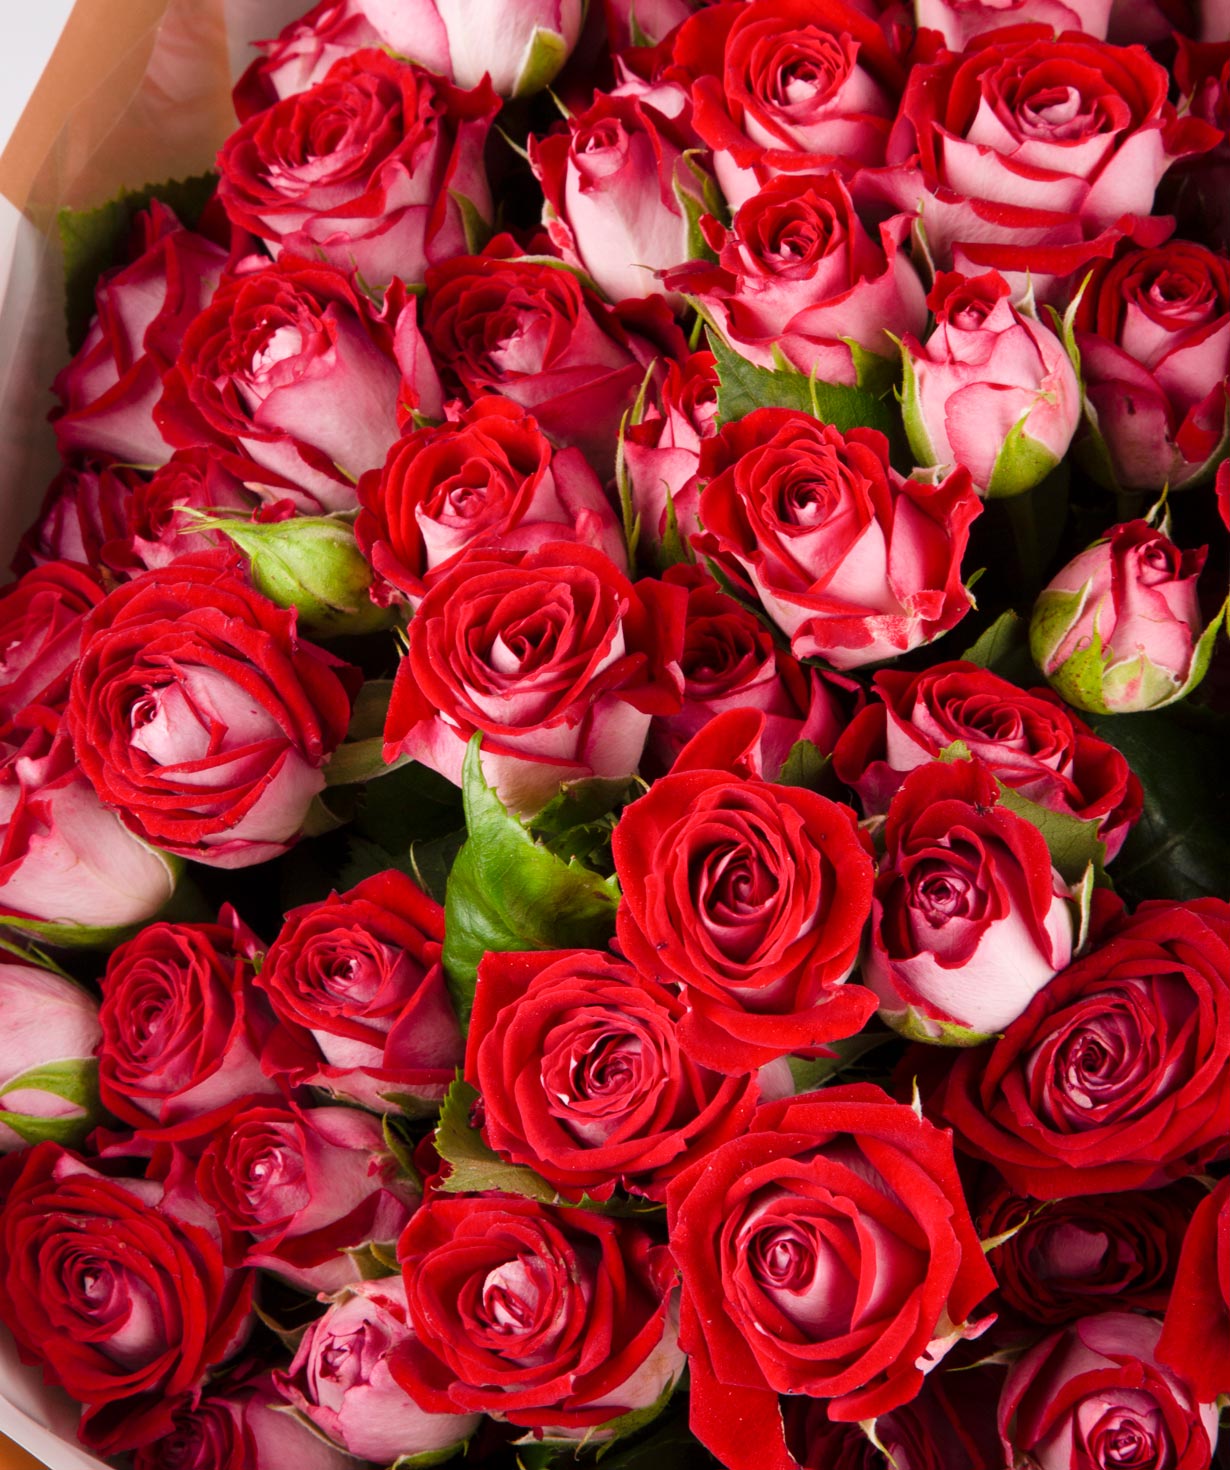 Ծաղկեփունջ «Անաիսա» վարդերով